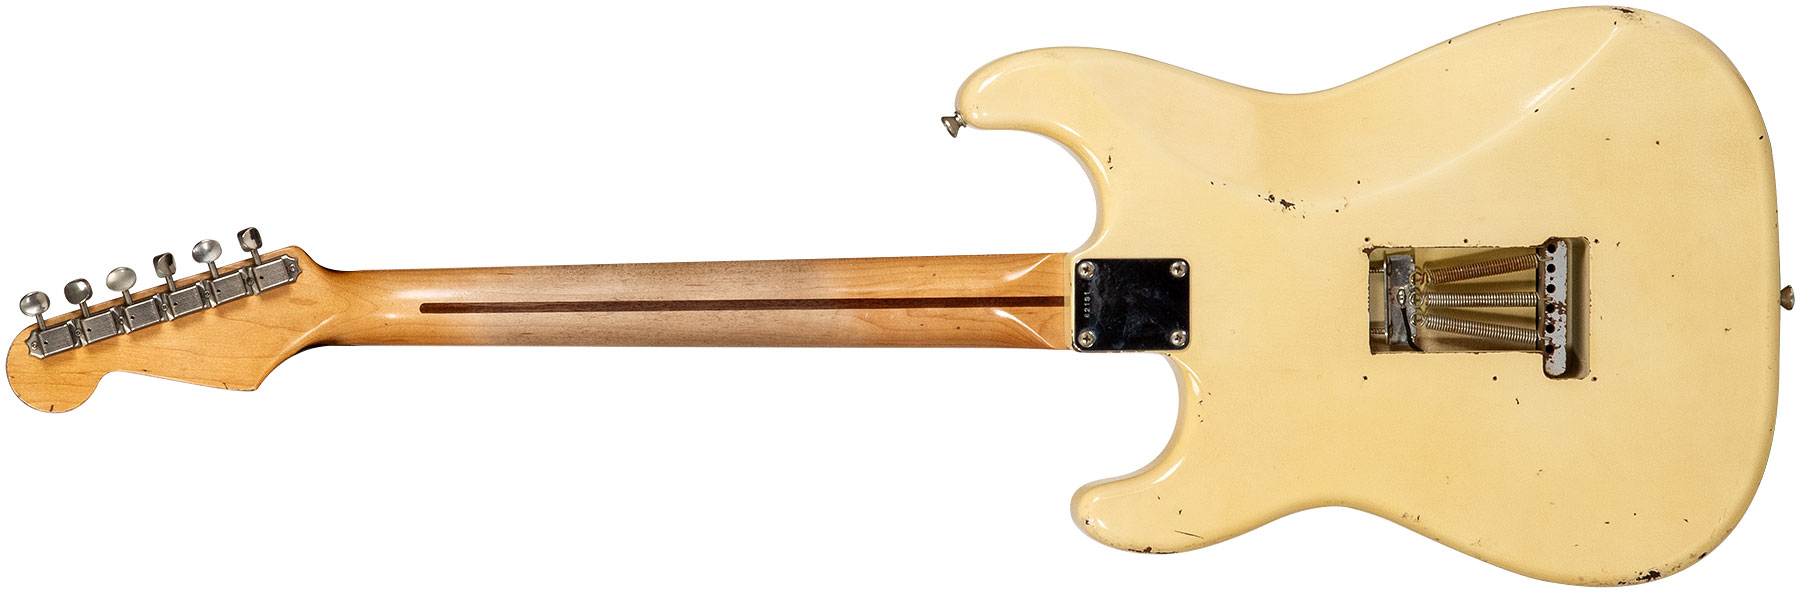 Rebelrelic S-series 55 3s Trem Mn #62191 - Light Aged Banana - Guitare Électrique Forme Str - Variation 1